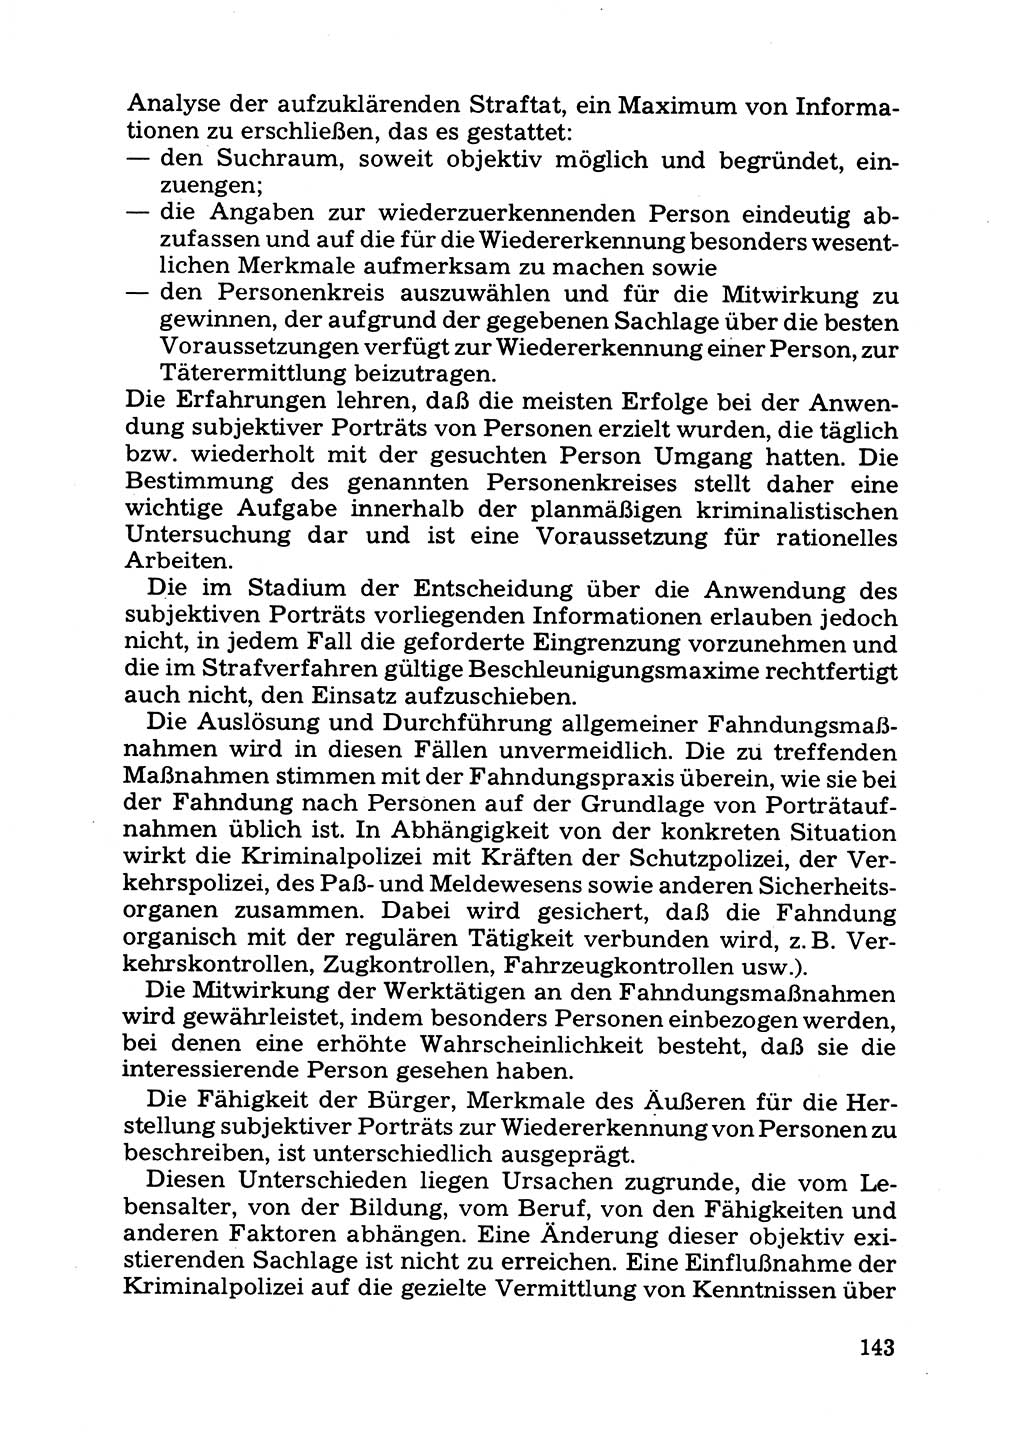 Das subjektive Porträt [Deutsche Demokratische Republik (DDR)] 1981, Seite 143 (Subj. Port. DDR 1981, S. 143)